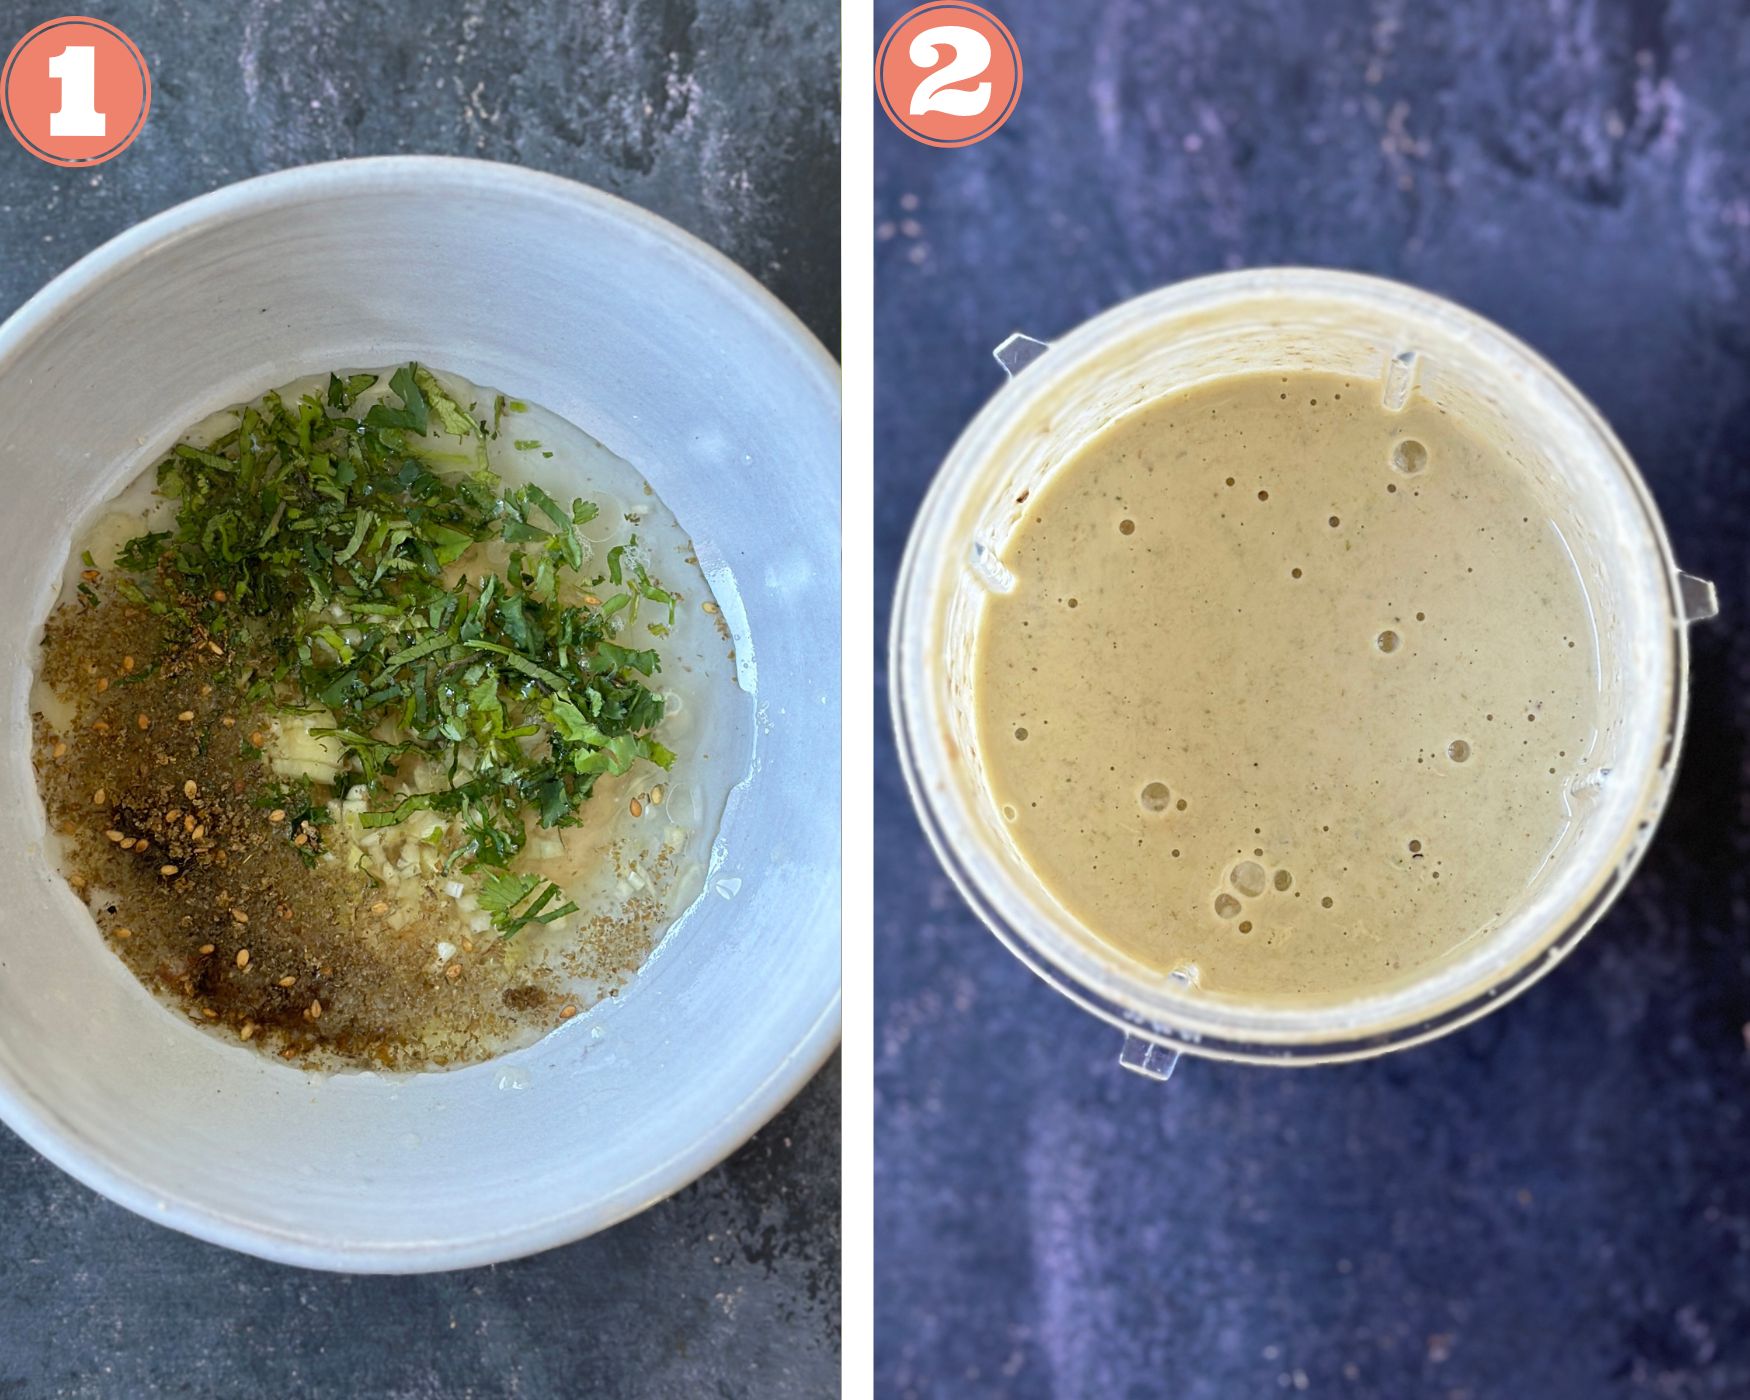 Collage to make tahini dip; mixing ingredients and blending.